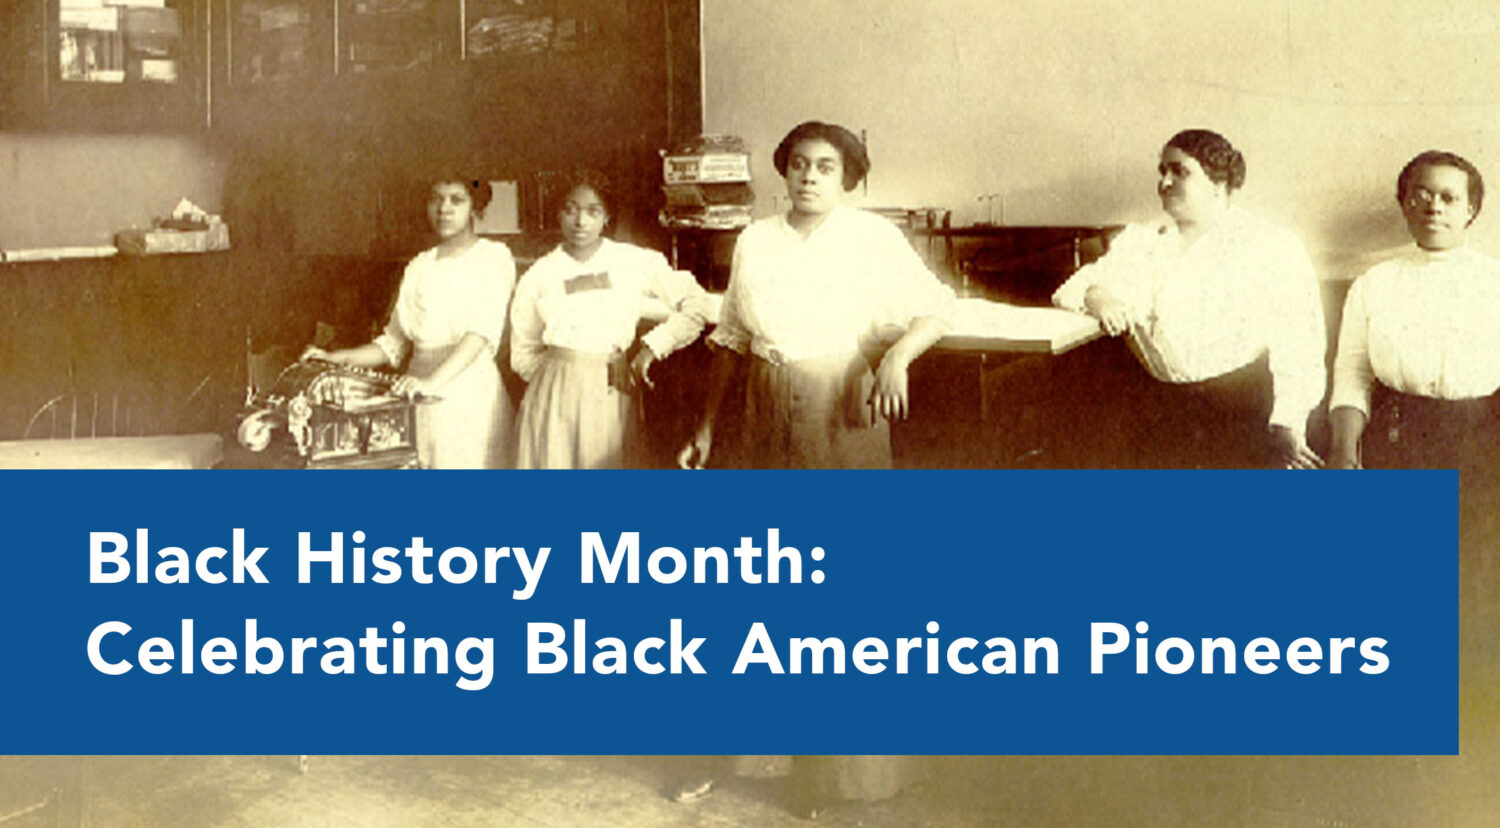 Celebrating Black American Pioneers